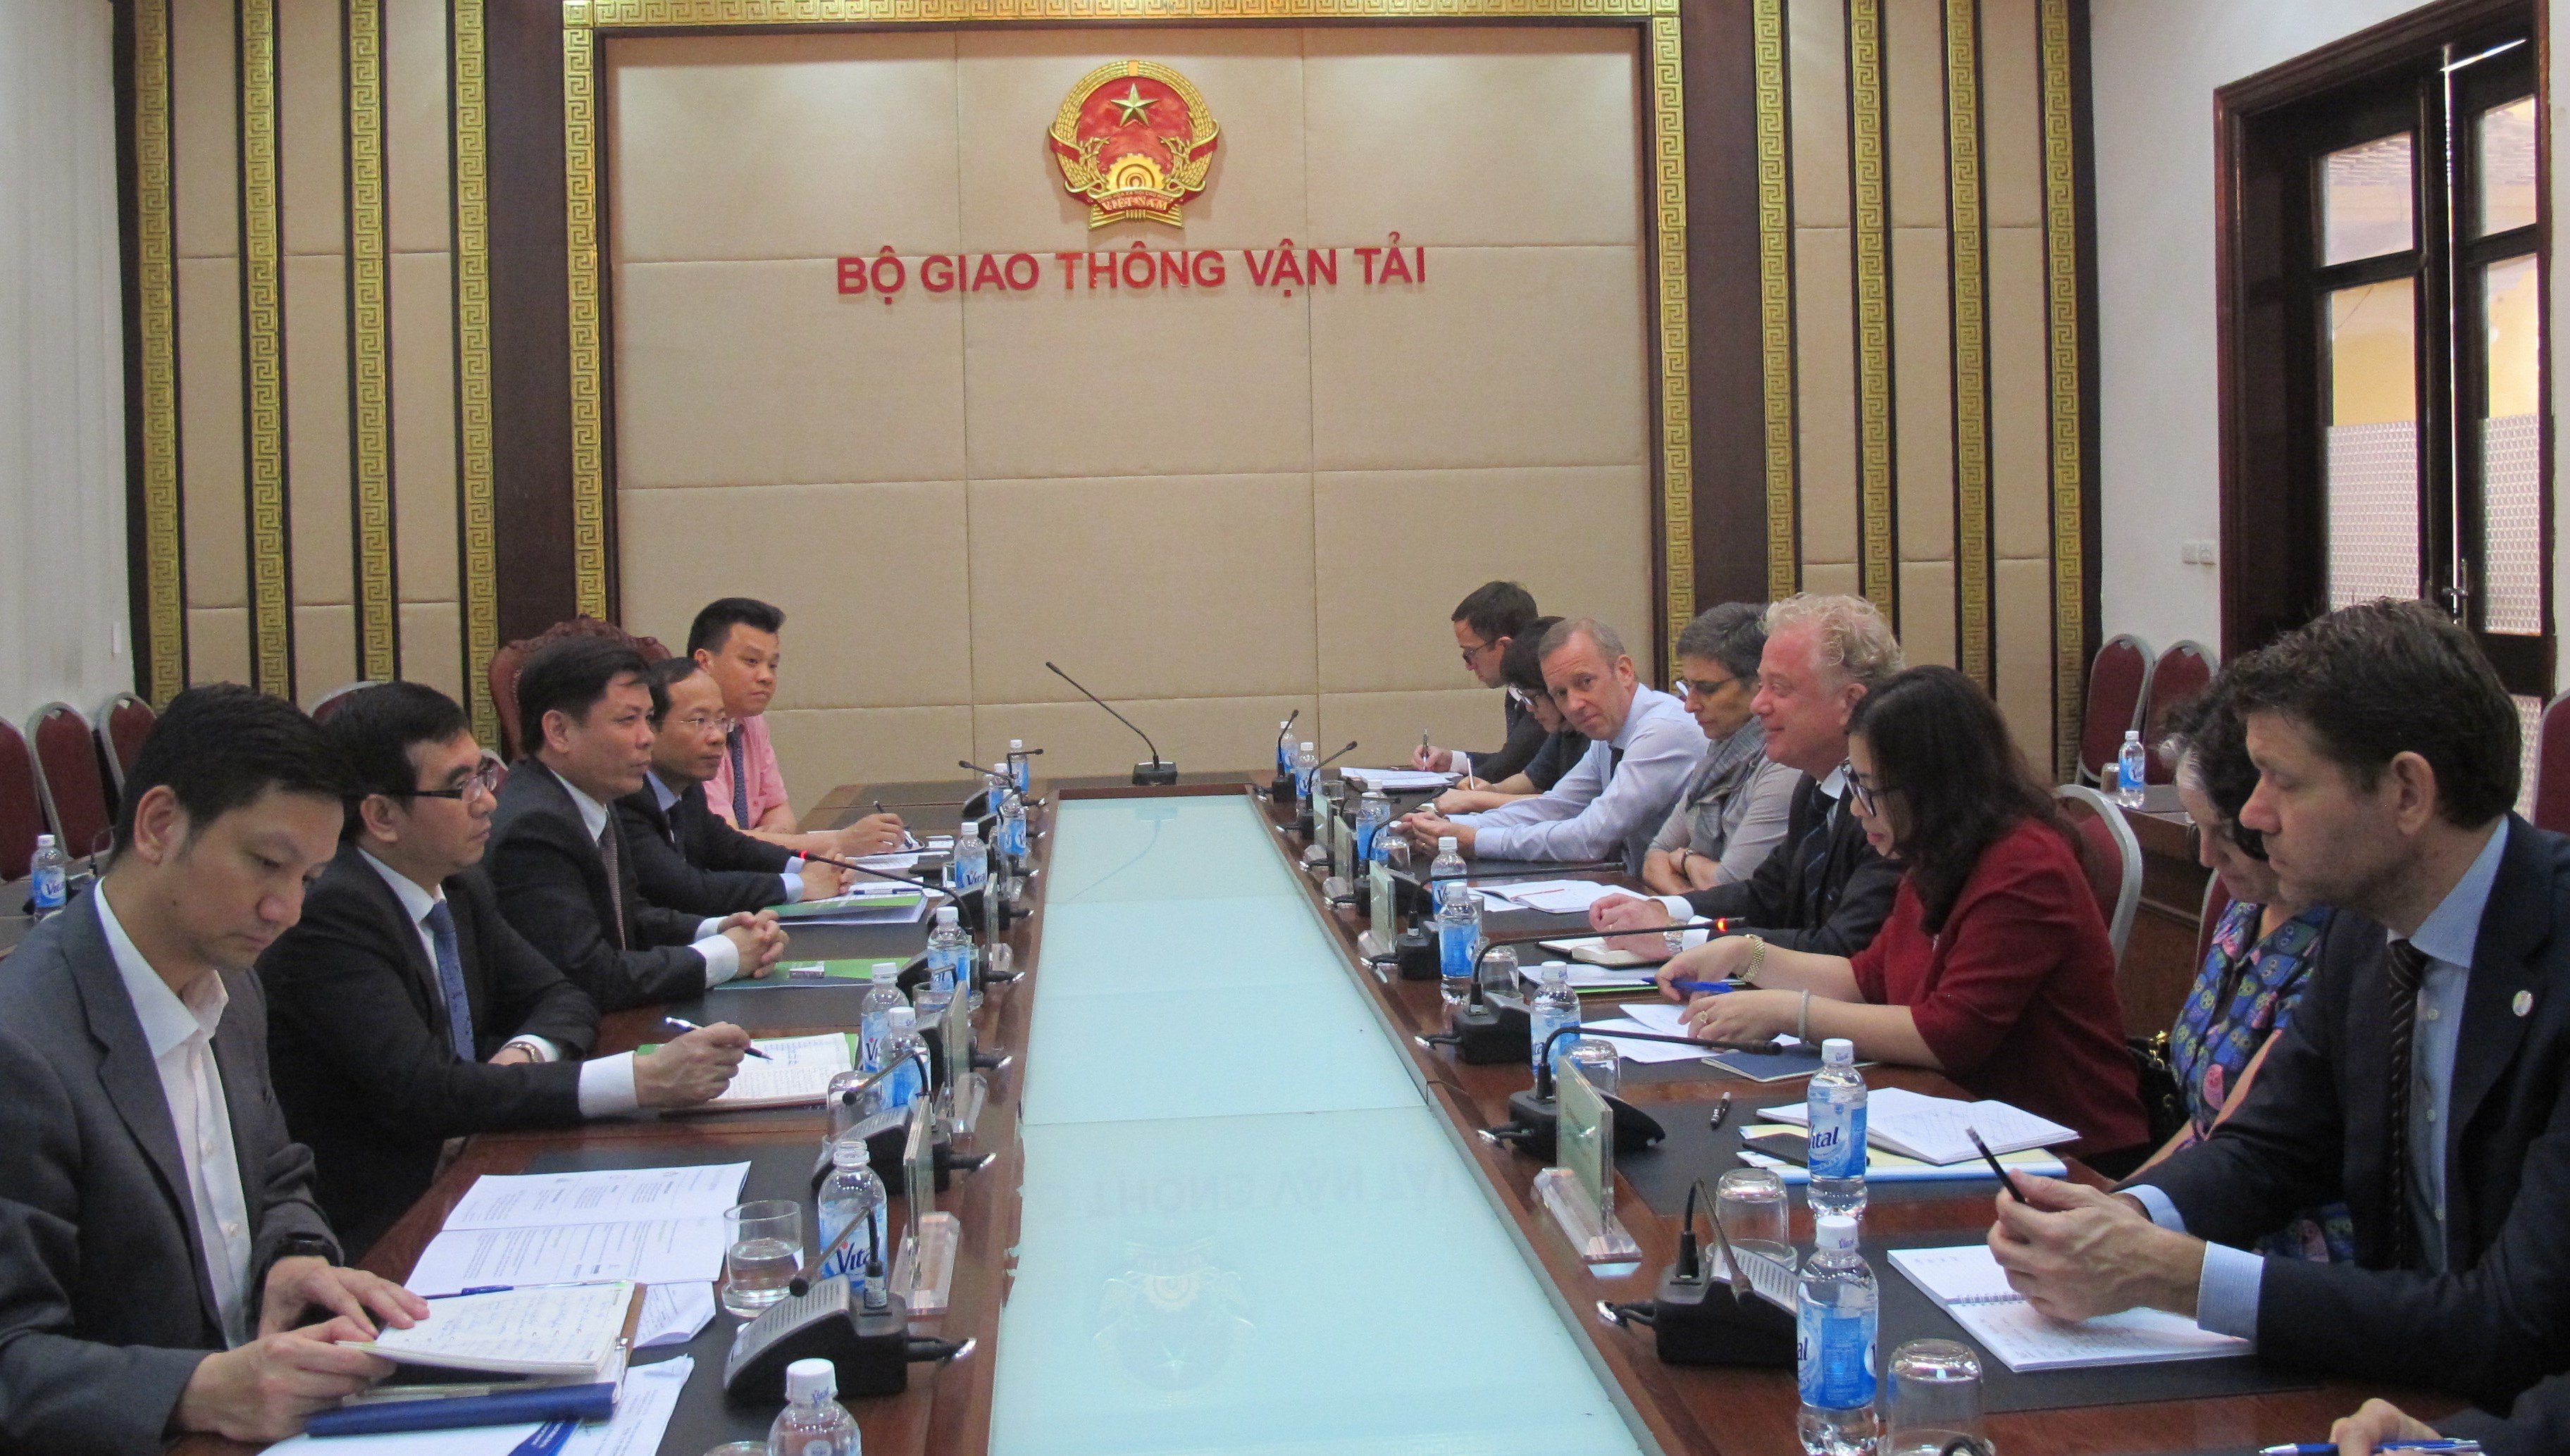 InfraCo Asia mong muốn đầu tư lĩnh vực đường sắt, cảng biển tại Việt Nam